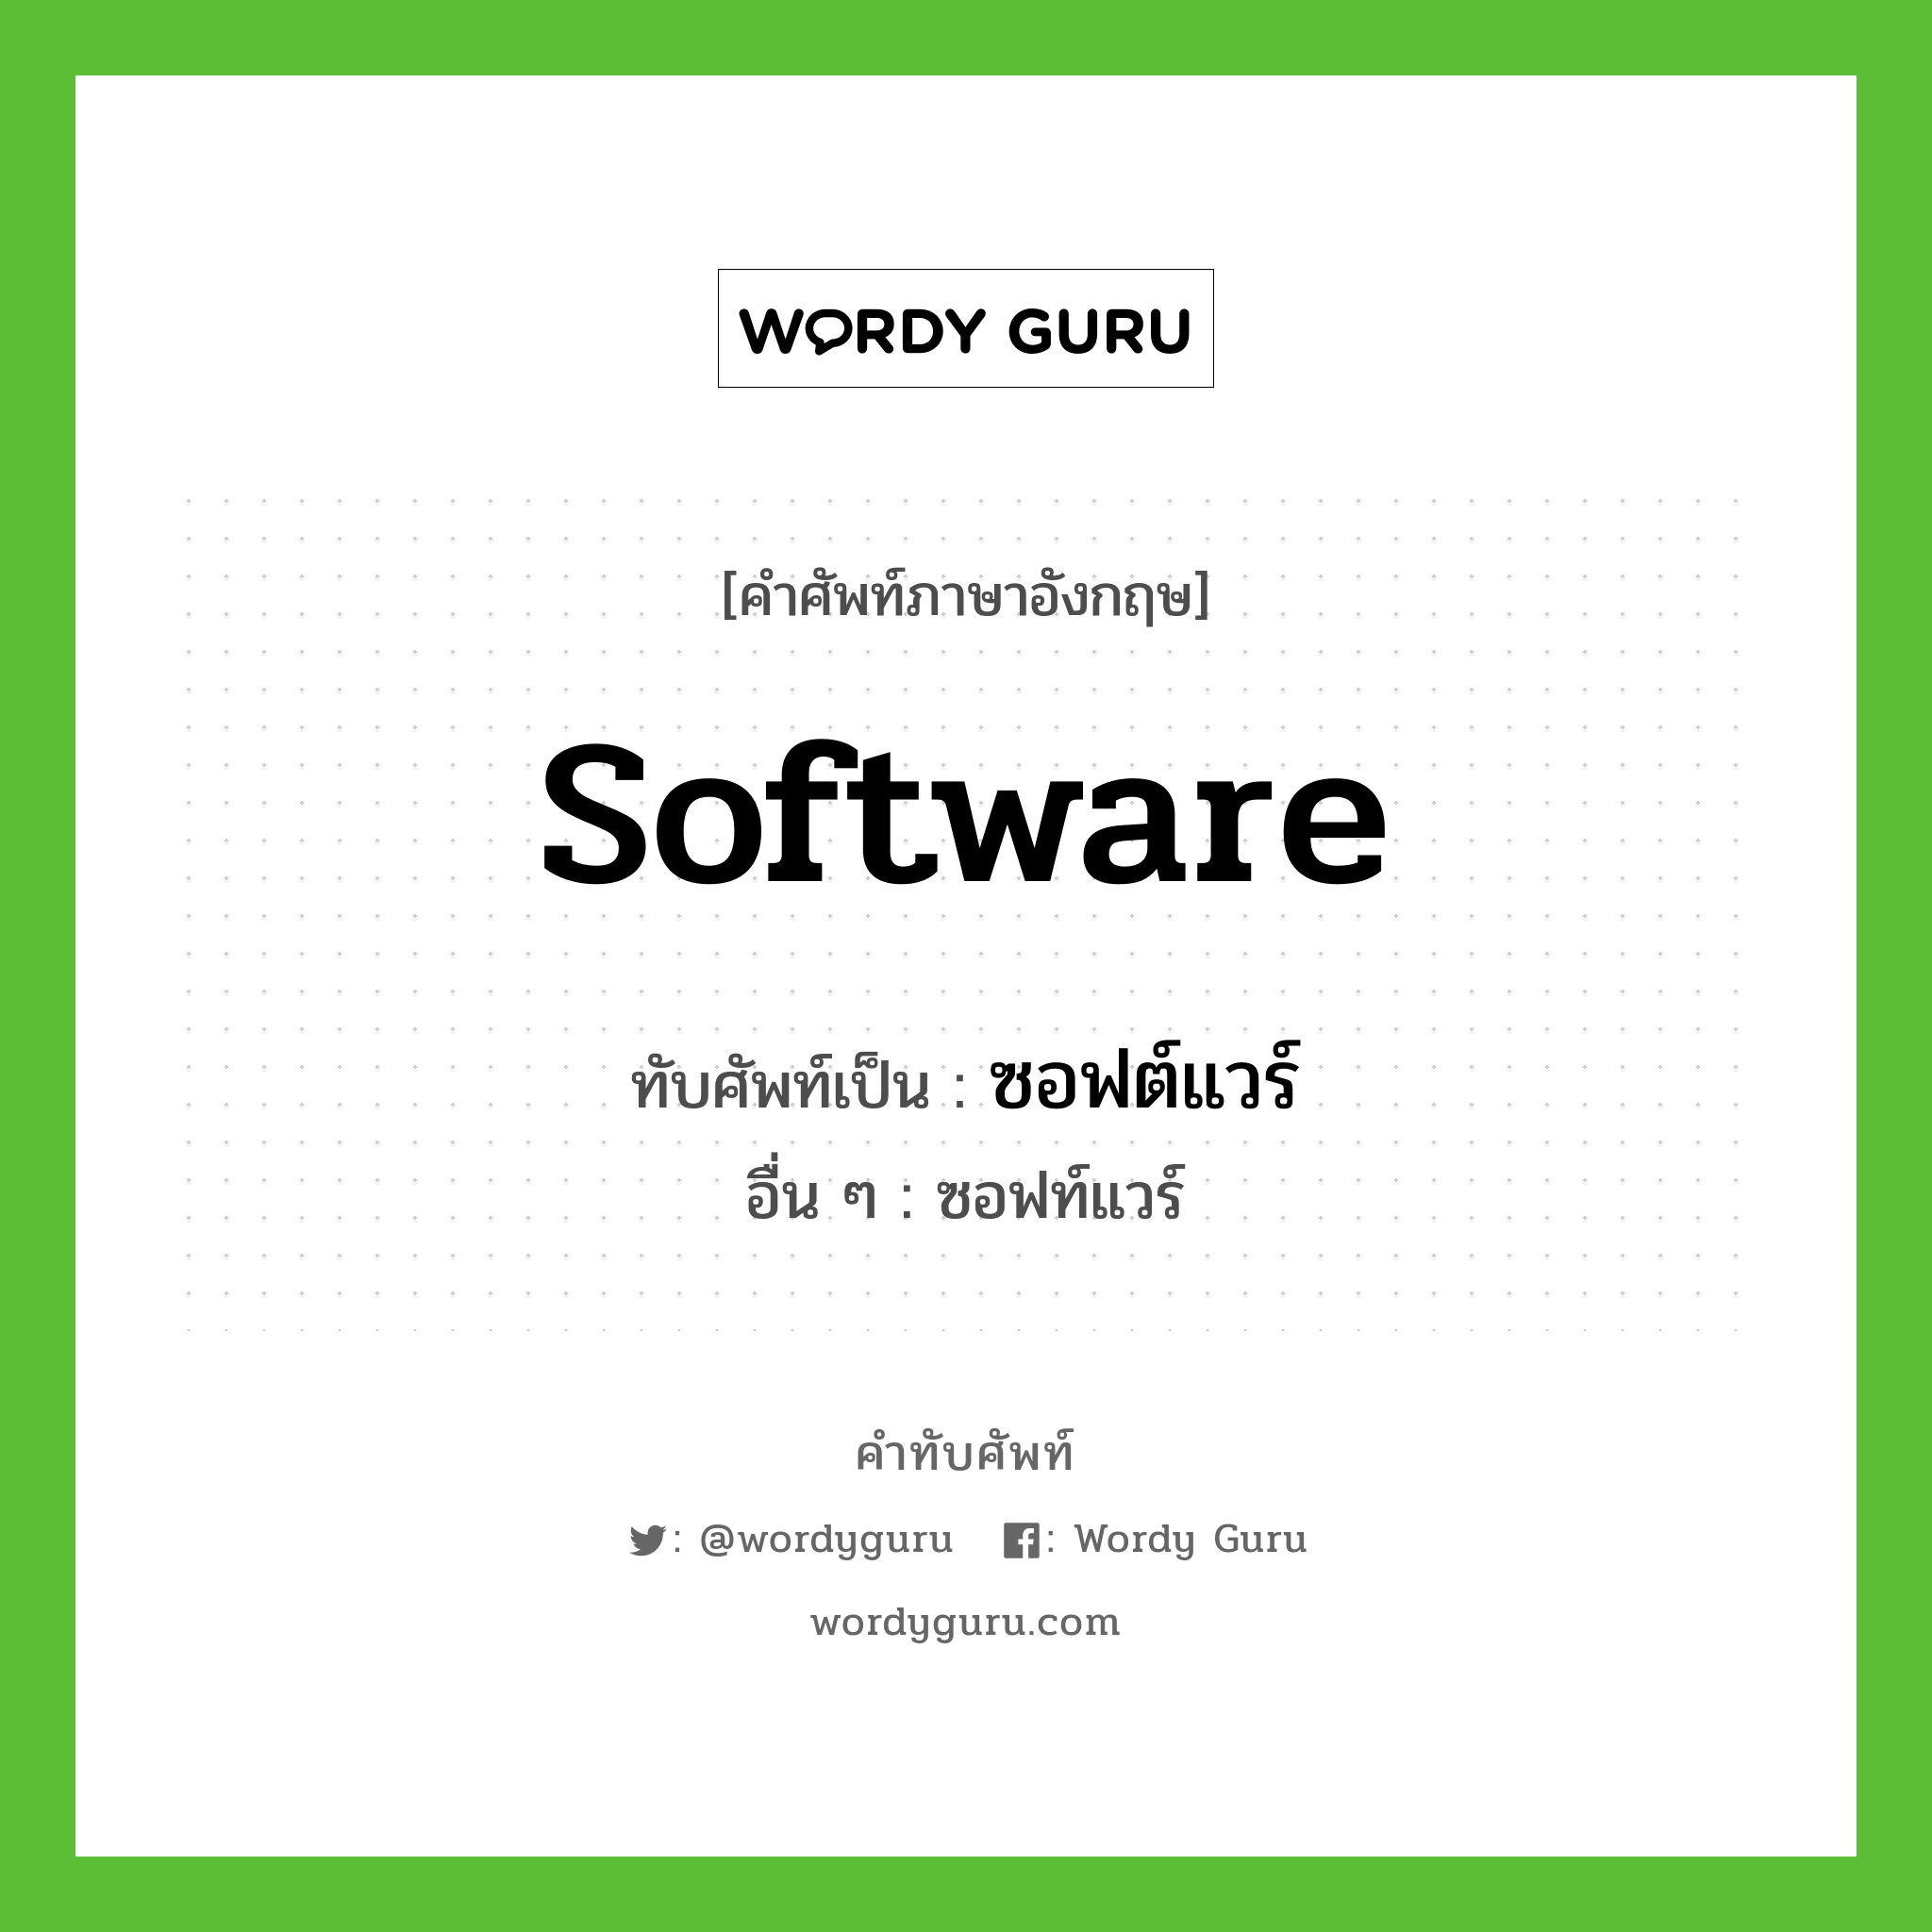 software เขียนเป็นคำไทยว่าอะไร?, คำศัพท์ภาษาอังกฤษ software ทับศัพท์เป็น ซอฟต์แวร์ อื่น ๆ ซอฟท์แวร์